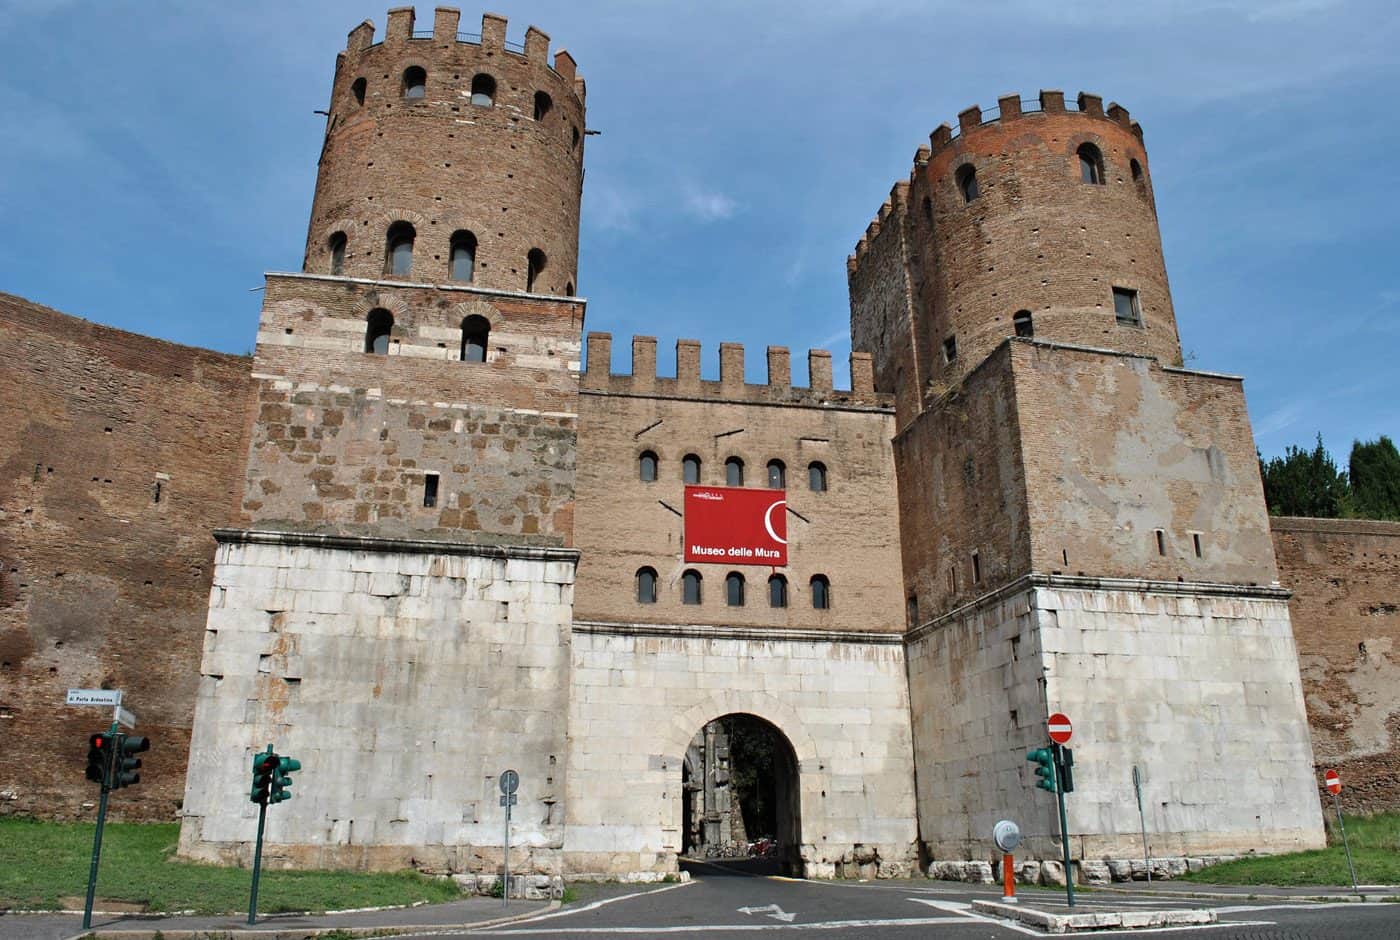 Porta San Sebastiano - Museo delle Mura